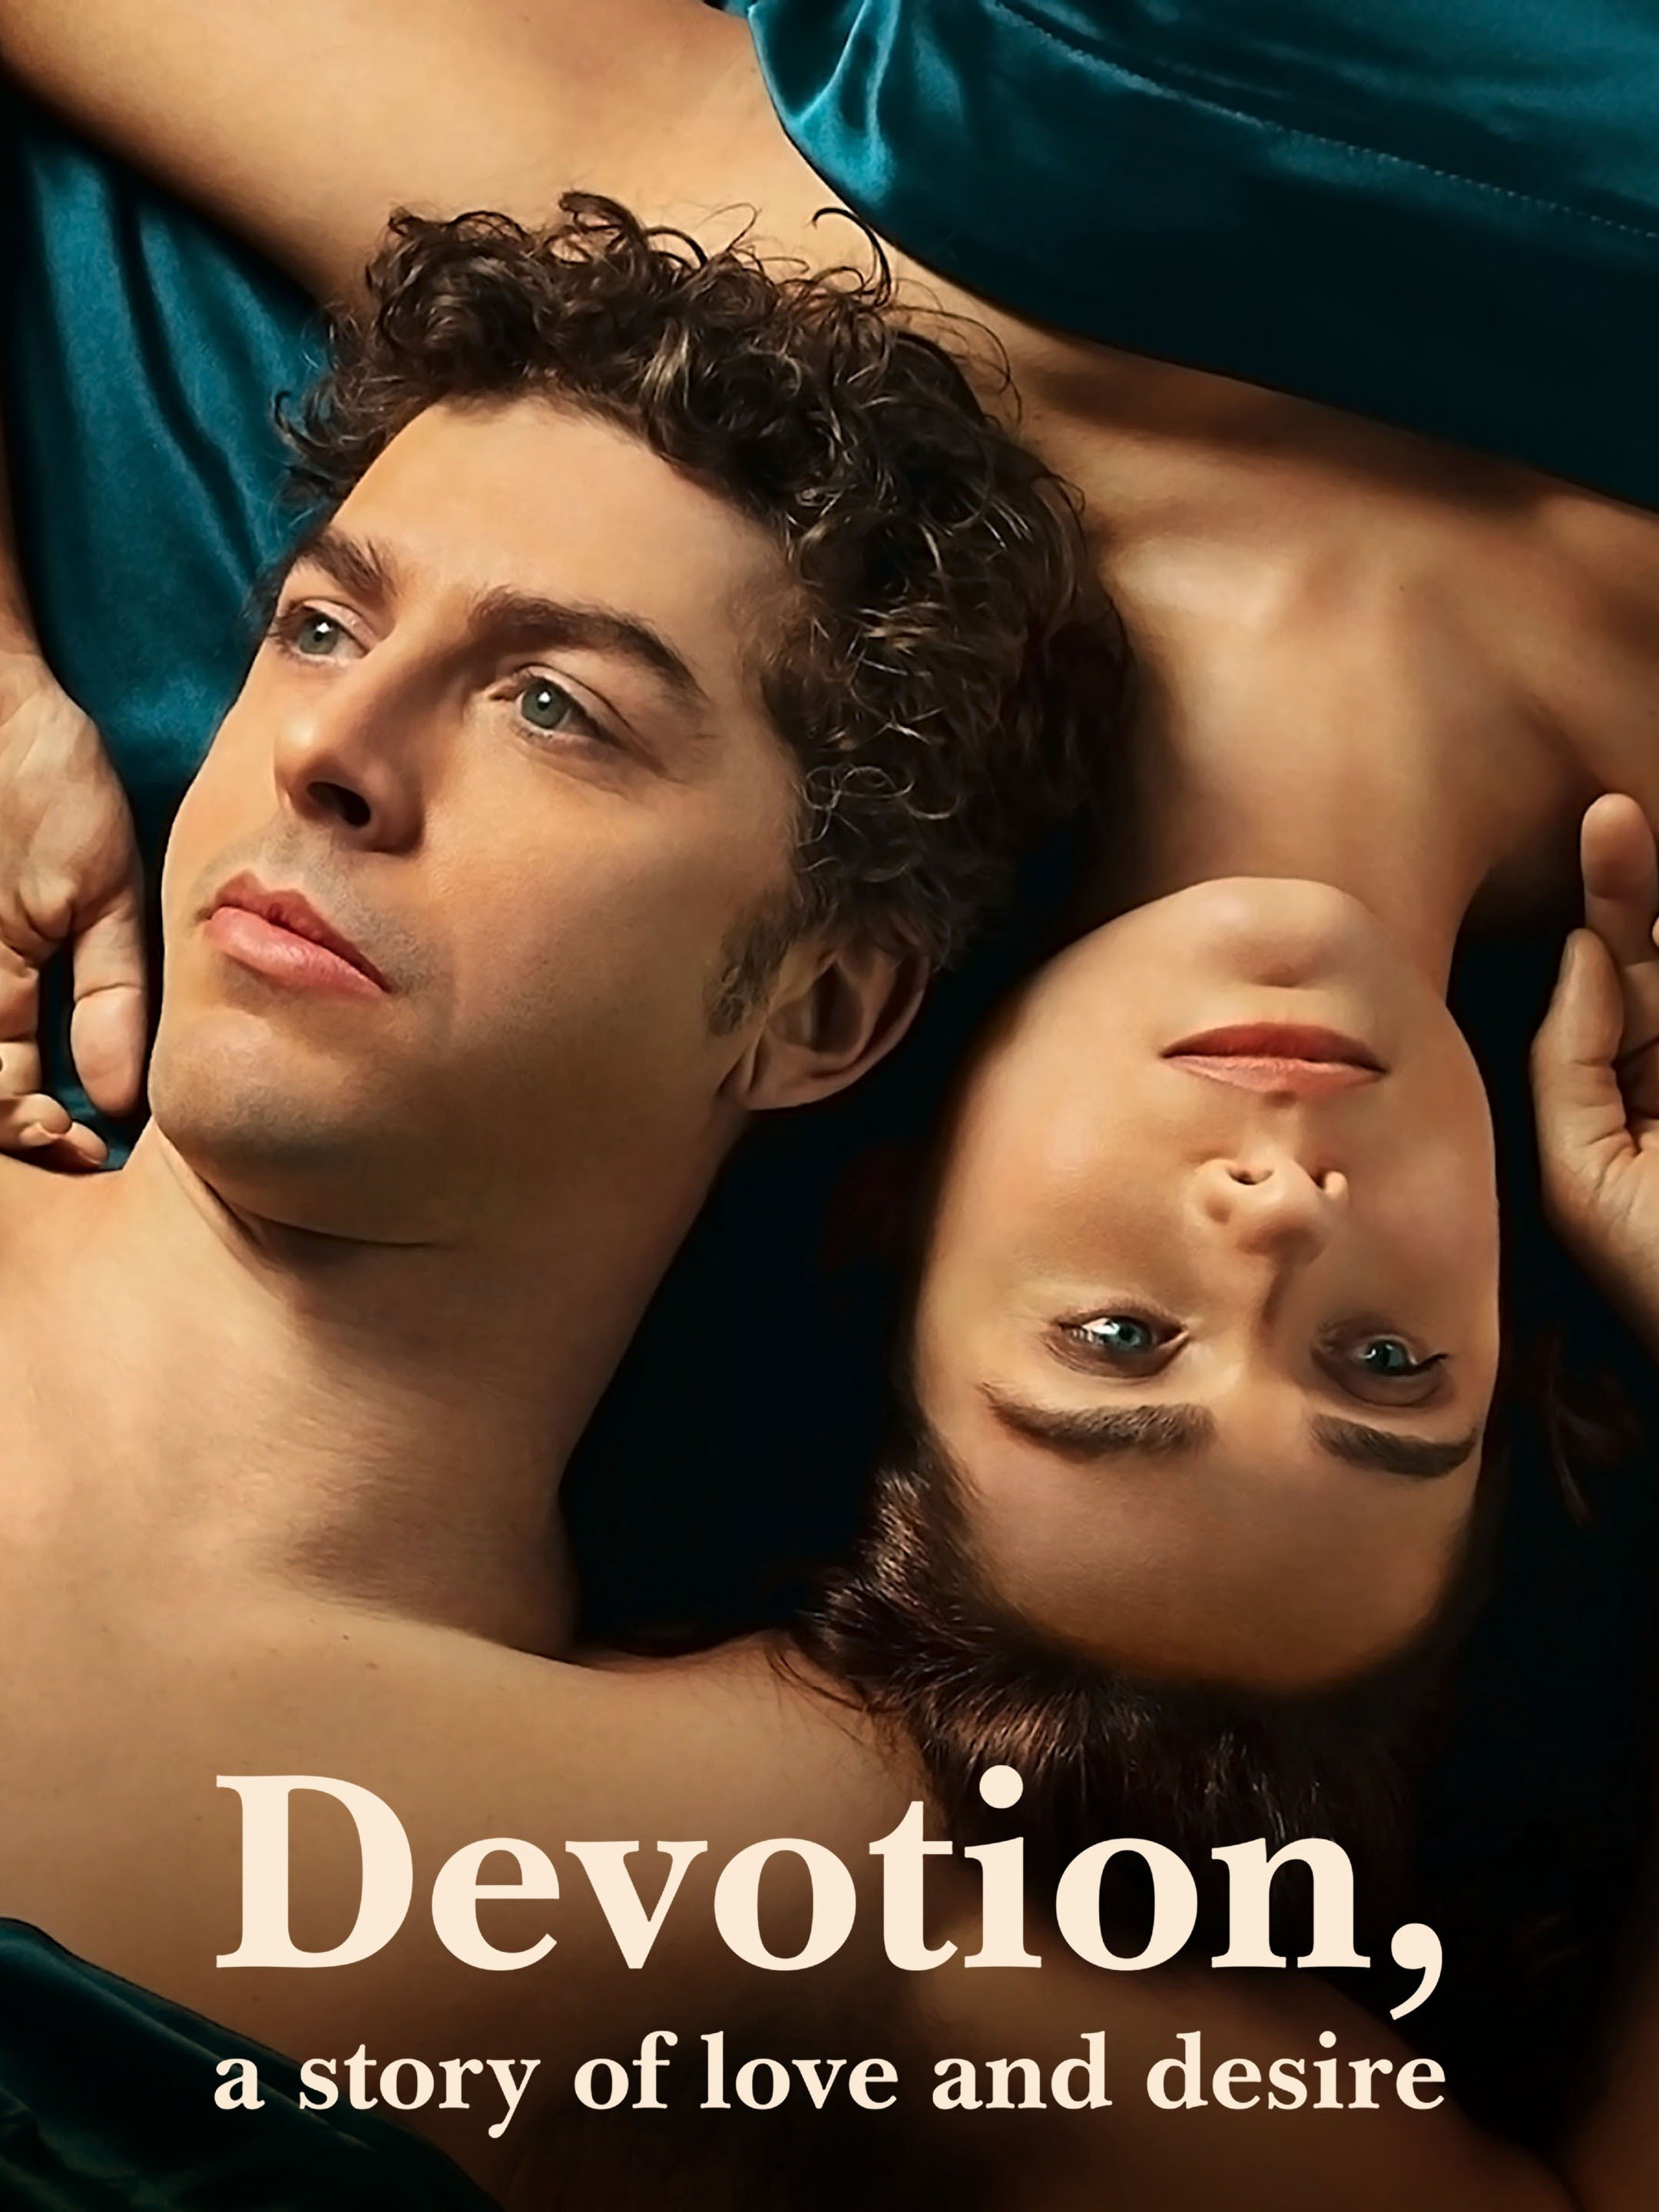 Xem Phim Chung thủy: Câu chuyện về tình yêu và dục vọng (Devotion, a Story of Love and Desire)